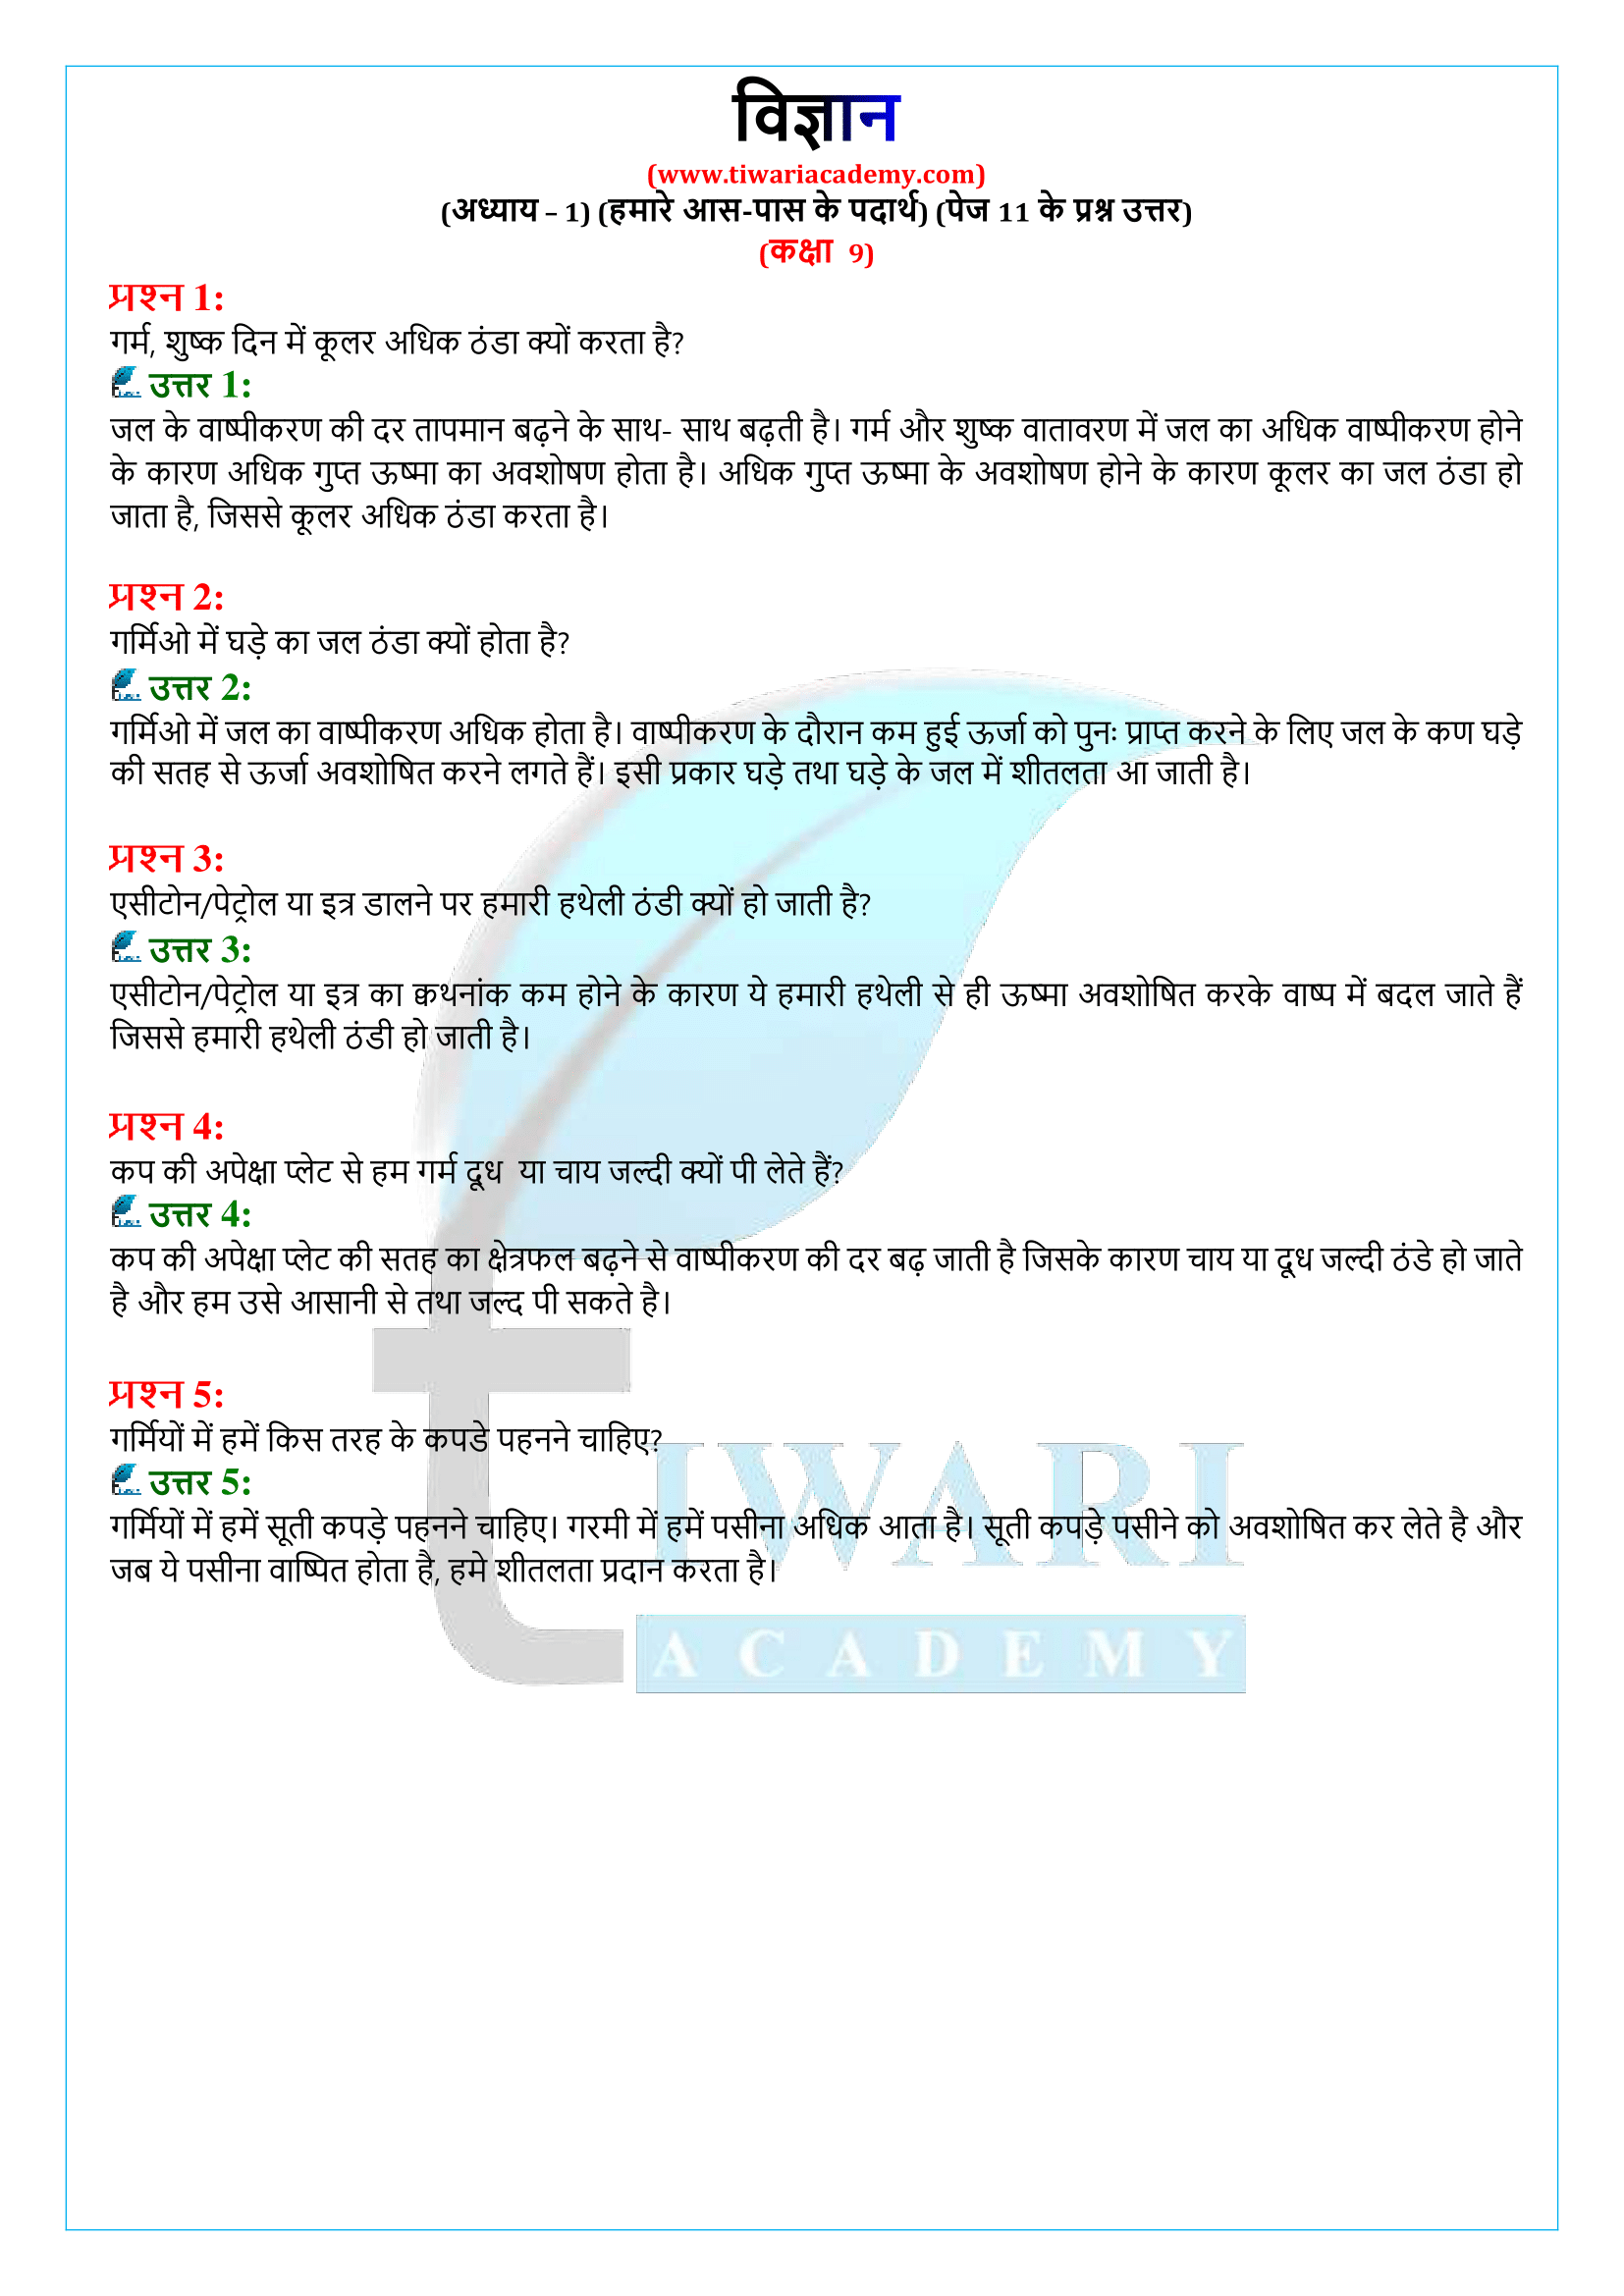 कक्षा 9 विज्ञान अध्याय 1 पेज 11 के प्रश्न उत्तर